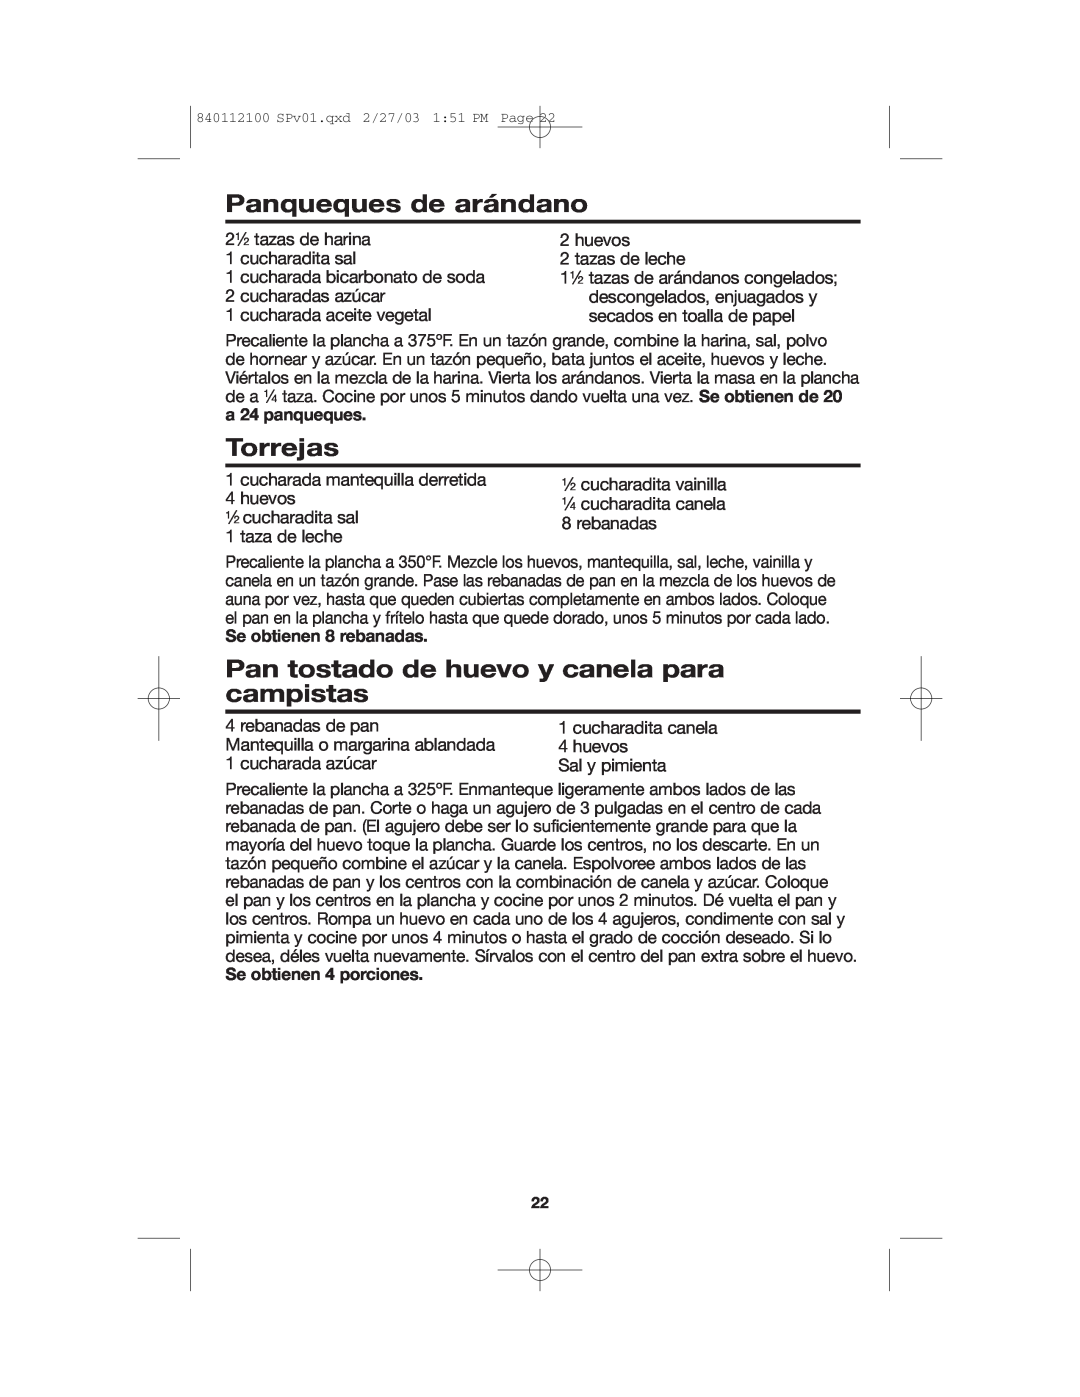 Proctor-Silex 840112100 manual Panqueques de arándano, Torrejas, Pan tostado de huevo y canela para campistas 